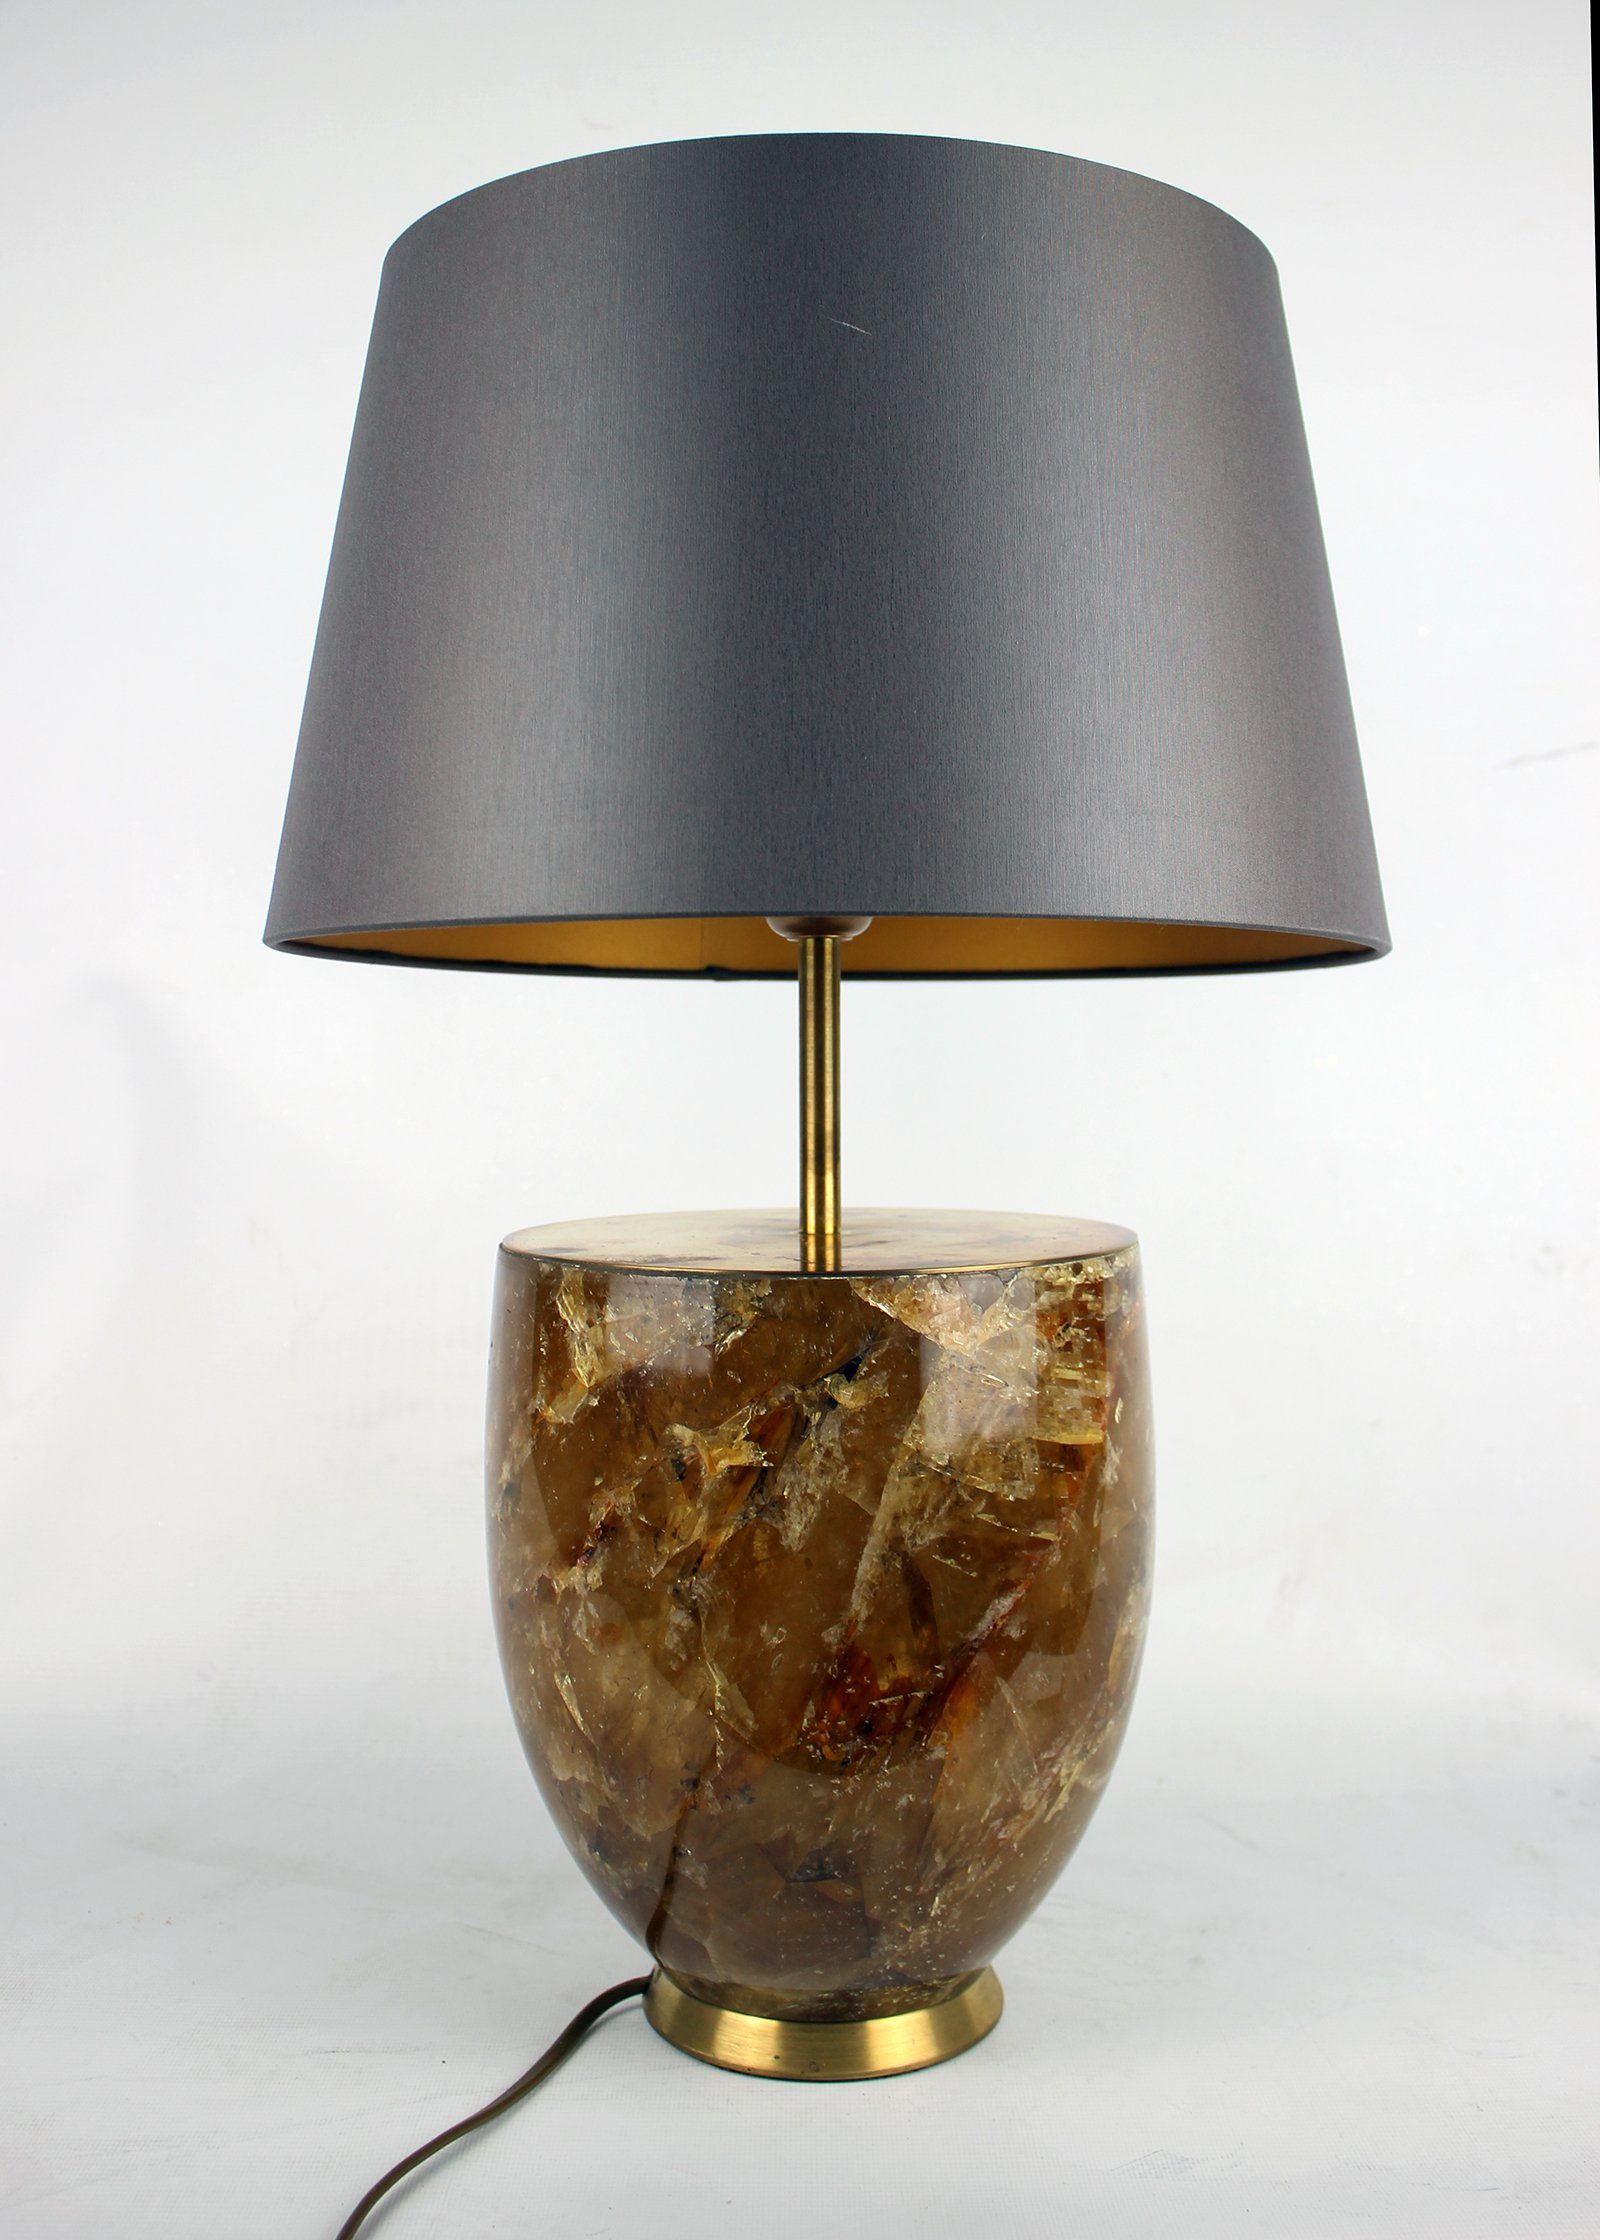 Signature Home Collection Tischleuchte Tischlampe Kristallnaturstein mit Lampenschirm klassisch, ohne Leuchtmittel, warmweiß, handgefertigt aus echtem Kristall Naturstein braun